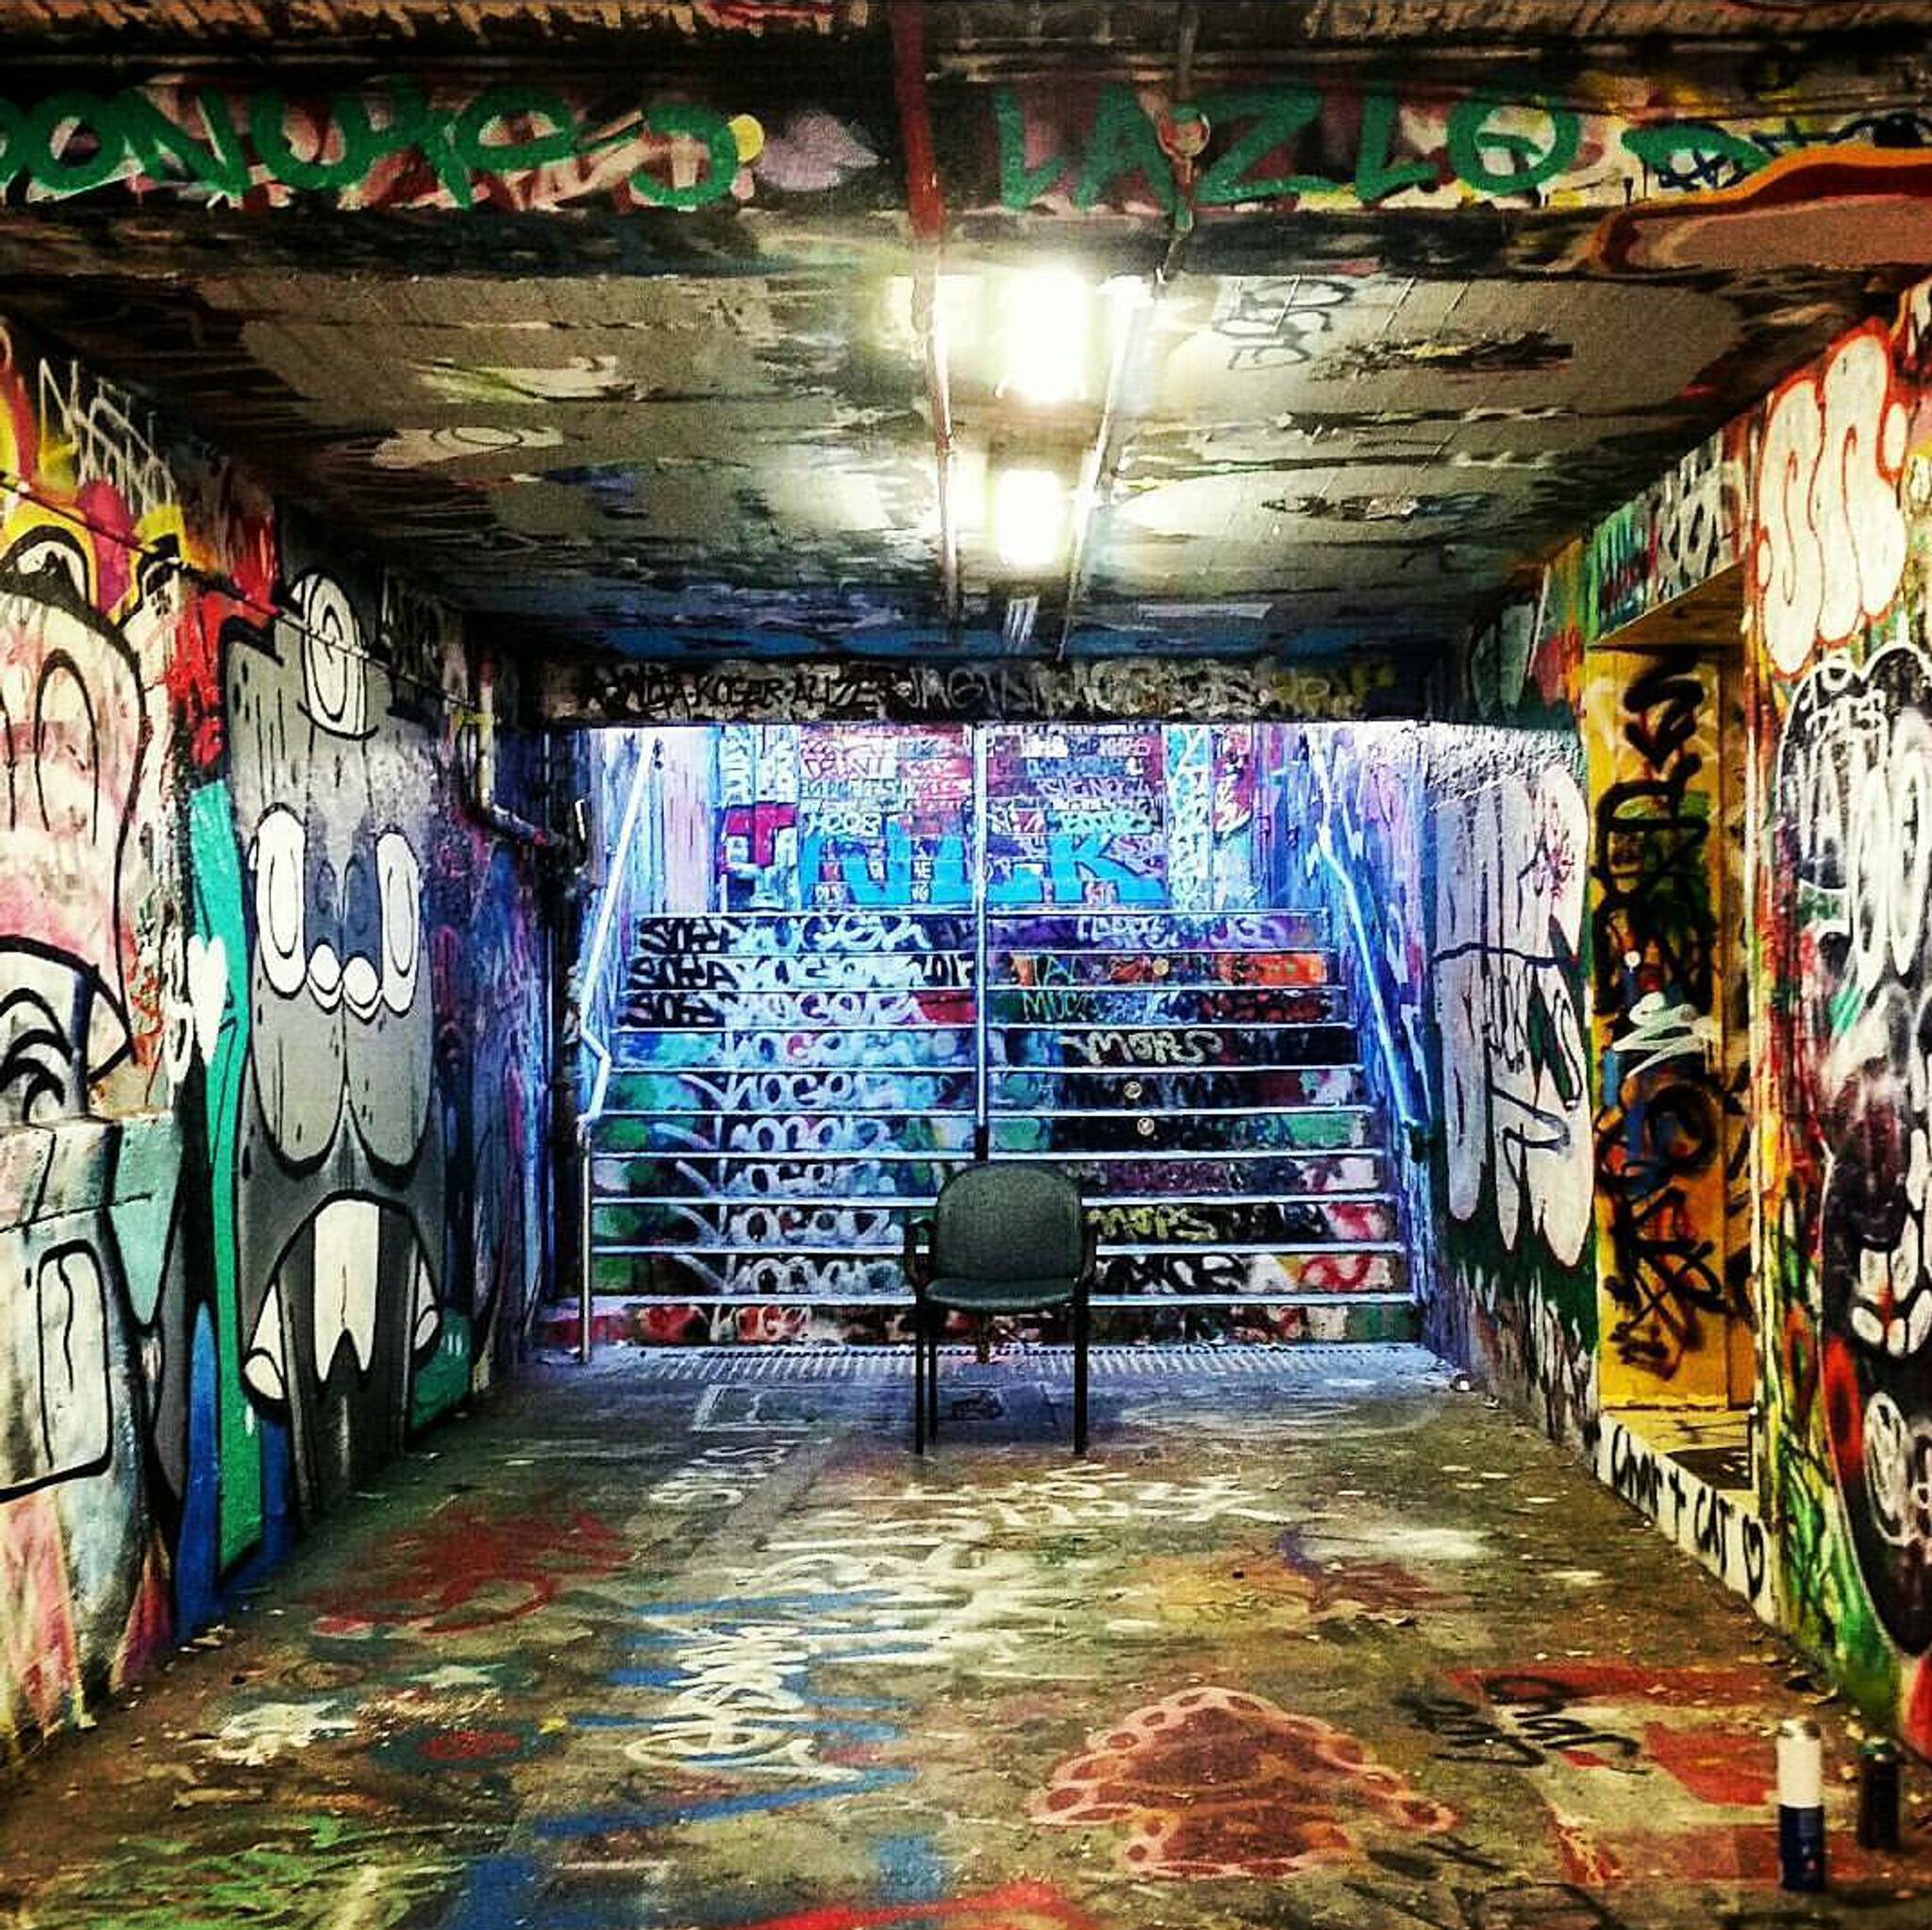 &mdash;USYD Graffiti Tunnel